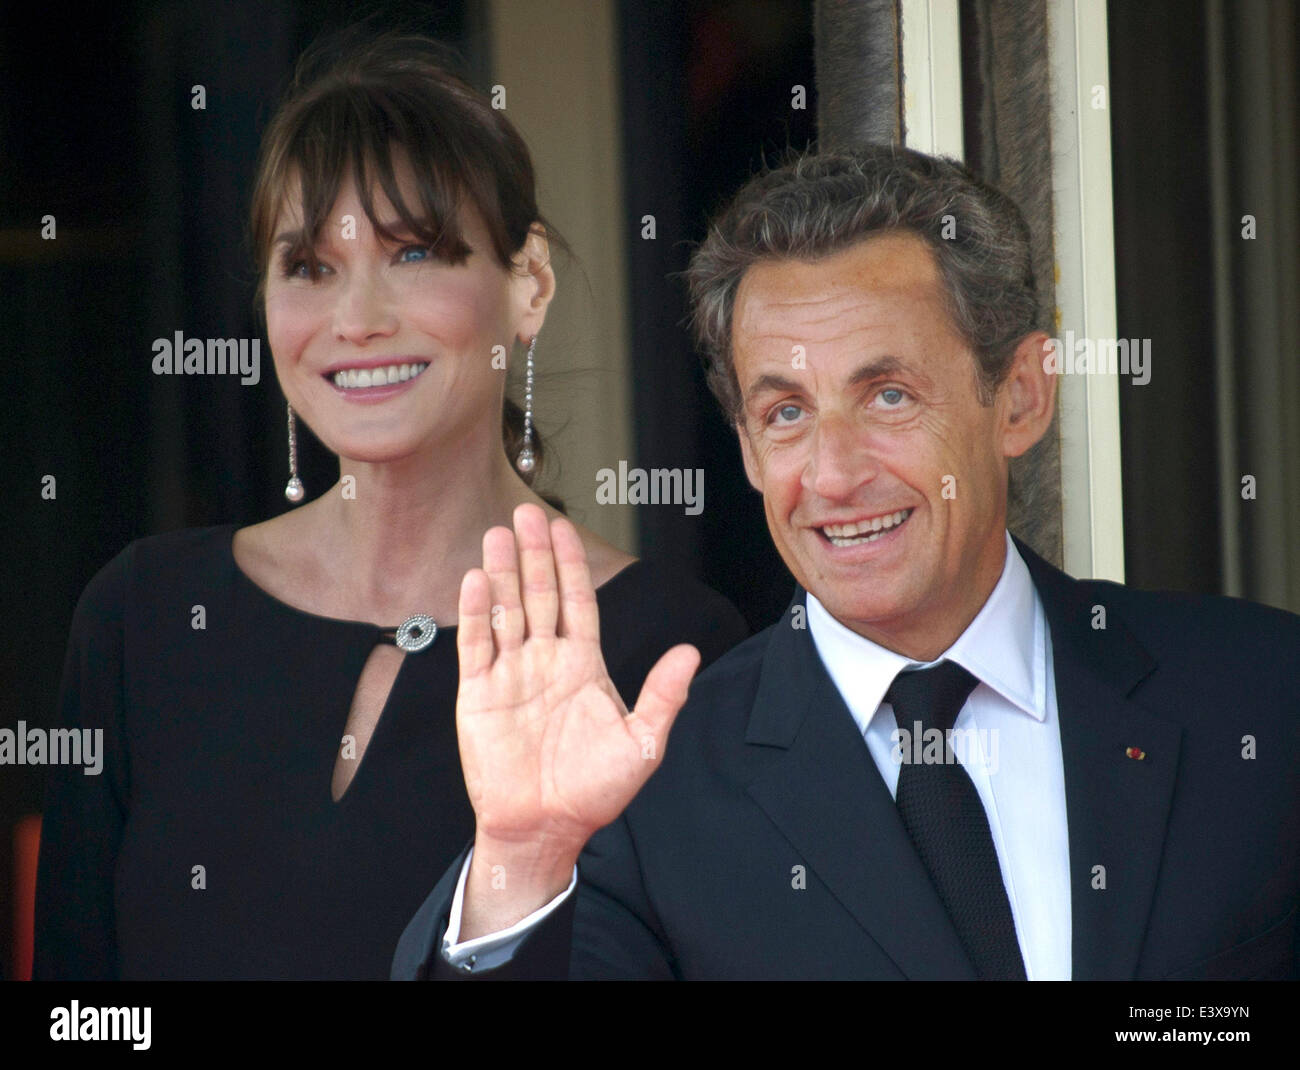 Der französische Präsident Nicolas Sarkozy und seine Frau Carla Bruni-Sarkozy warten am Donnerstag (26.05.2011) in Deauville auf die Gäste zum Abendessen. In dem französischen Seebad am Ärmelkanal findet am 26. und 27. Mai der diesjährige G8-Gipfel statt. Foto: Peer Grimm dpa Stock Photo